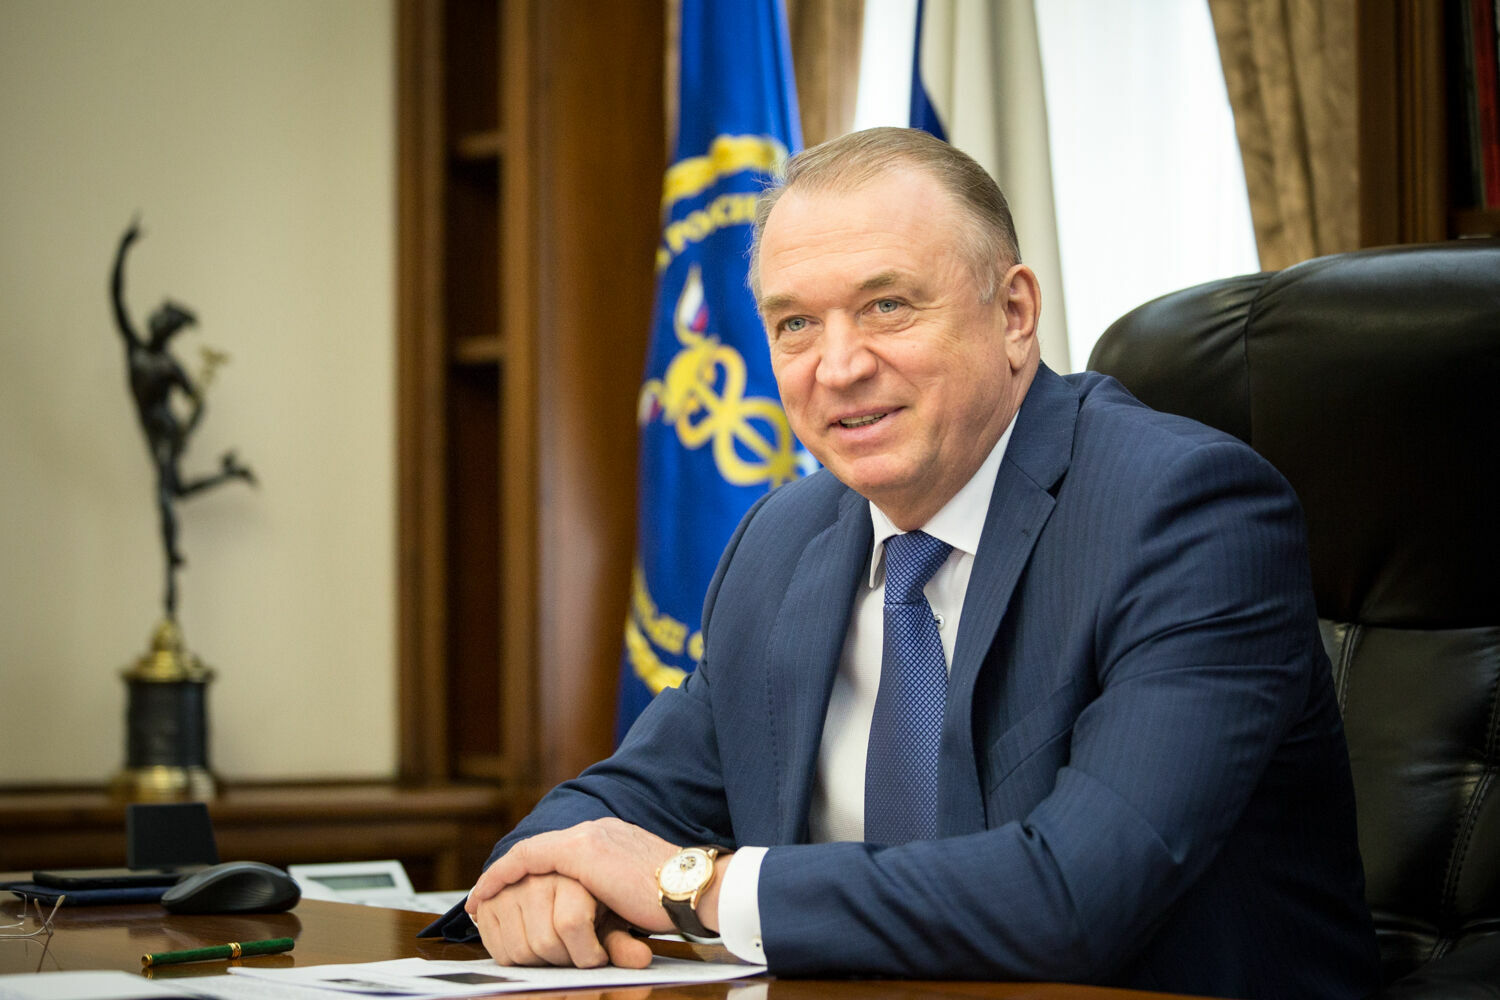 Президент ТПП Сергей Катырин рассказал о проекте "100 надежд бизнеса" для молодежи